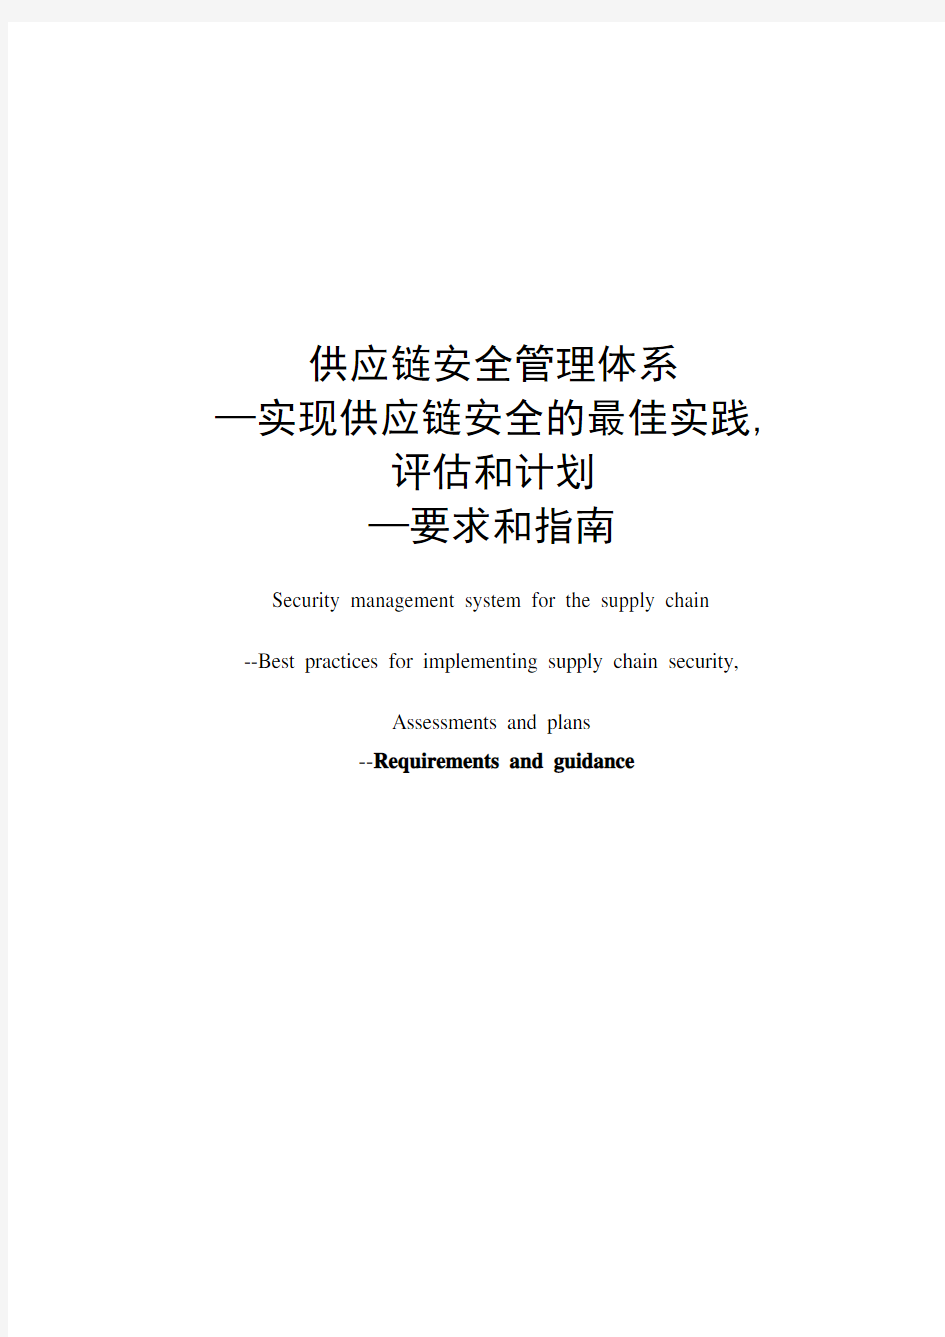 2007版ISO28001实现供应链安全的最佳实践评估和计划(中文)0906